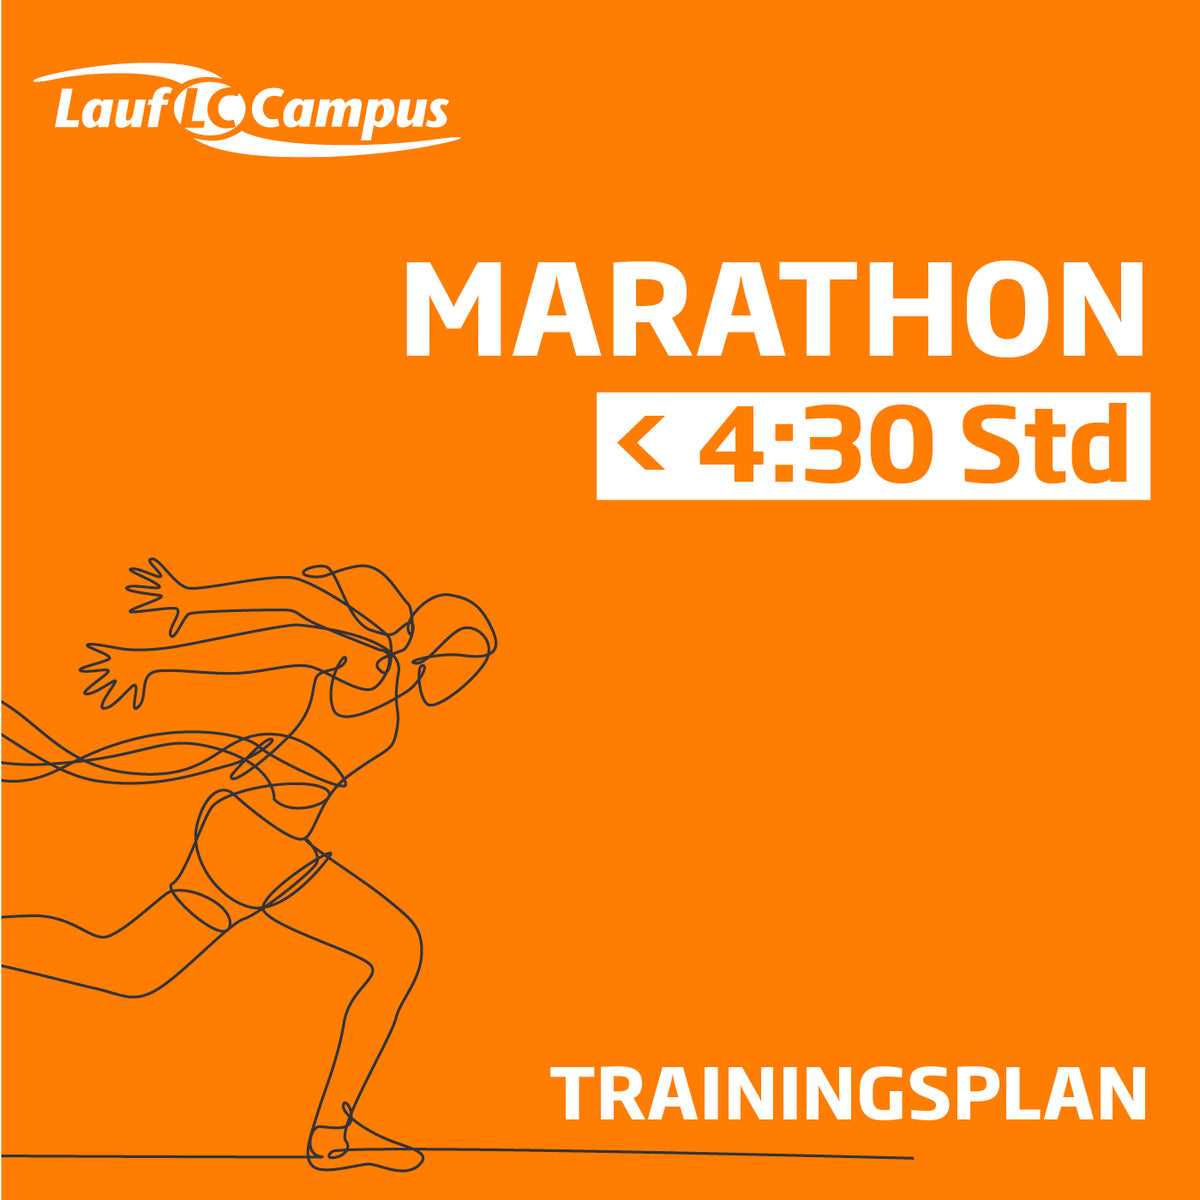 Trainingsplan für Marathon unter 4:30 Stunden